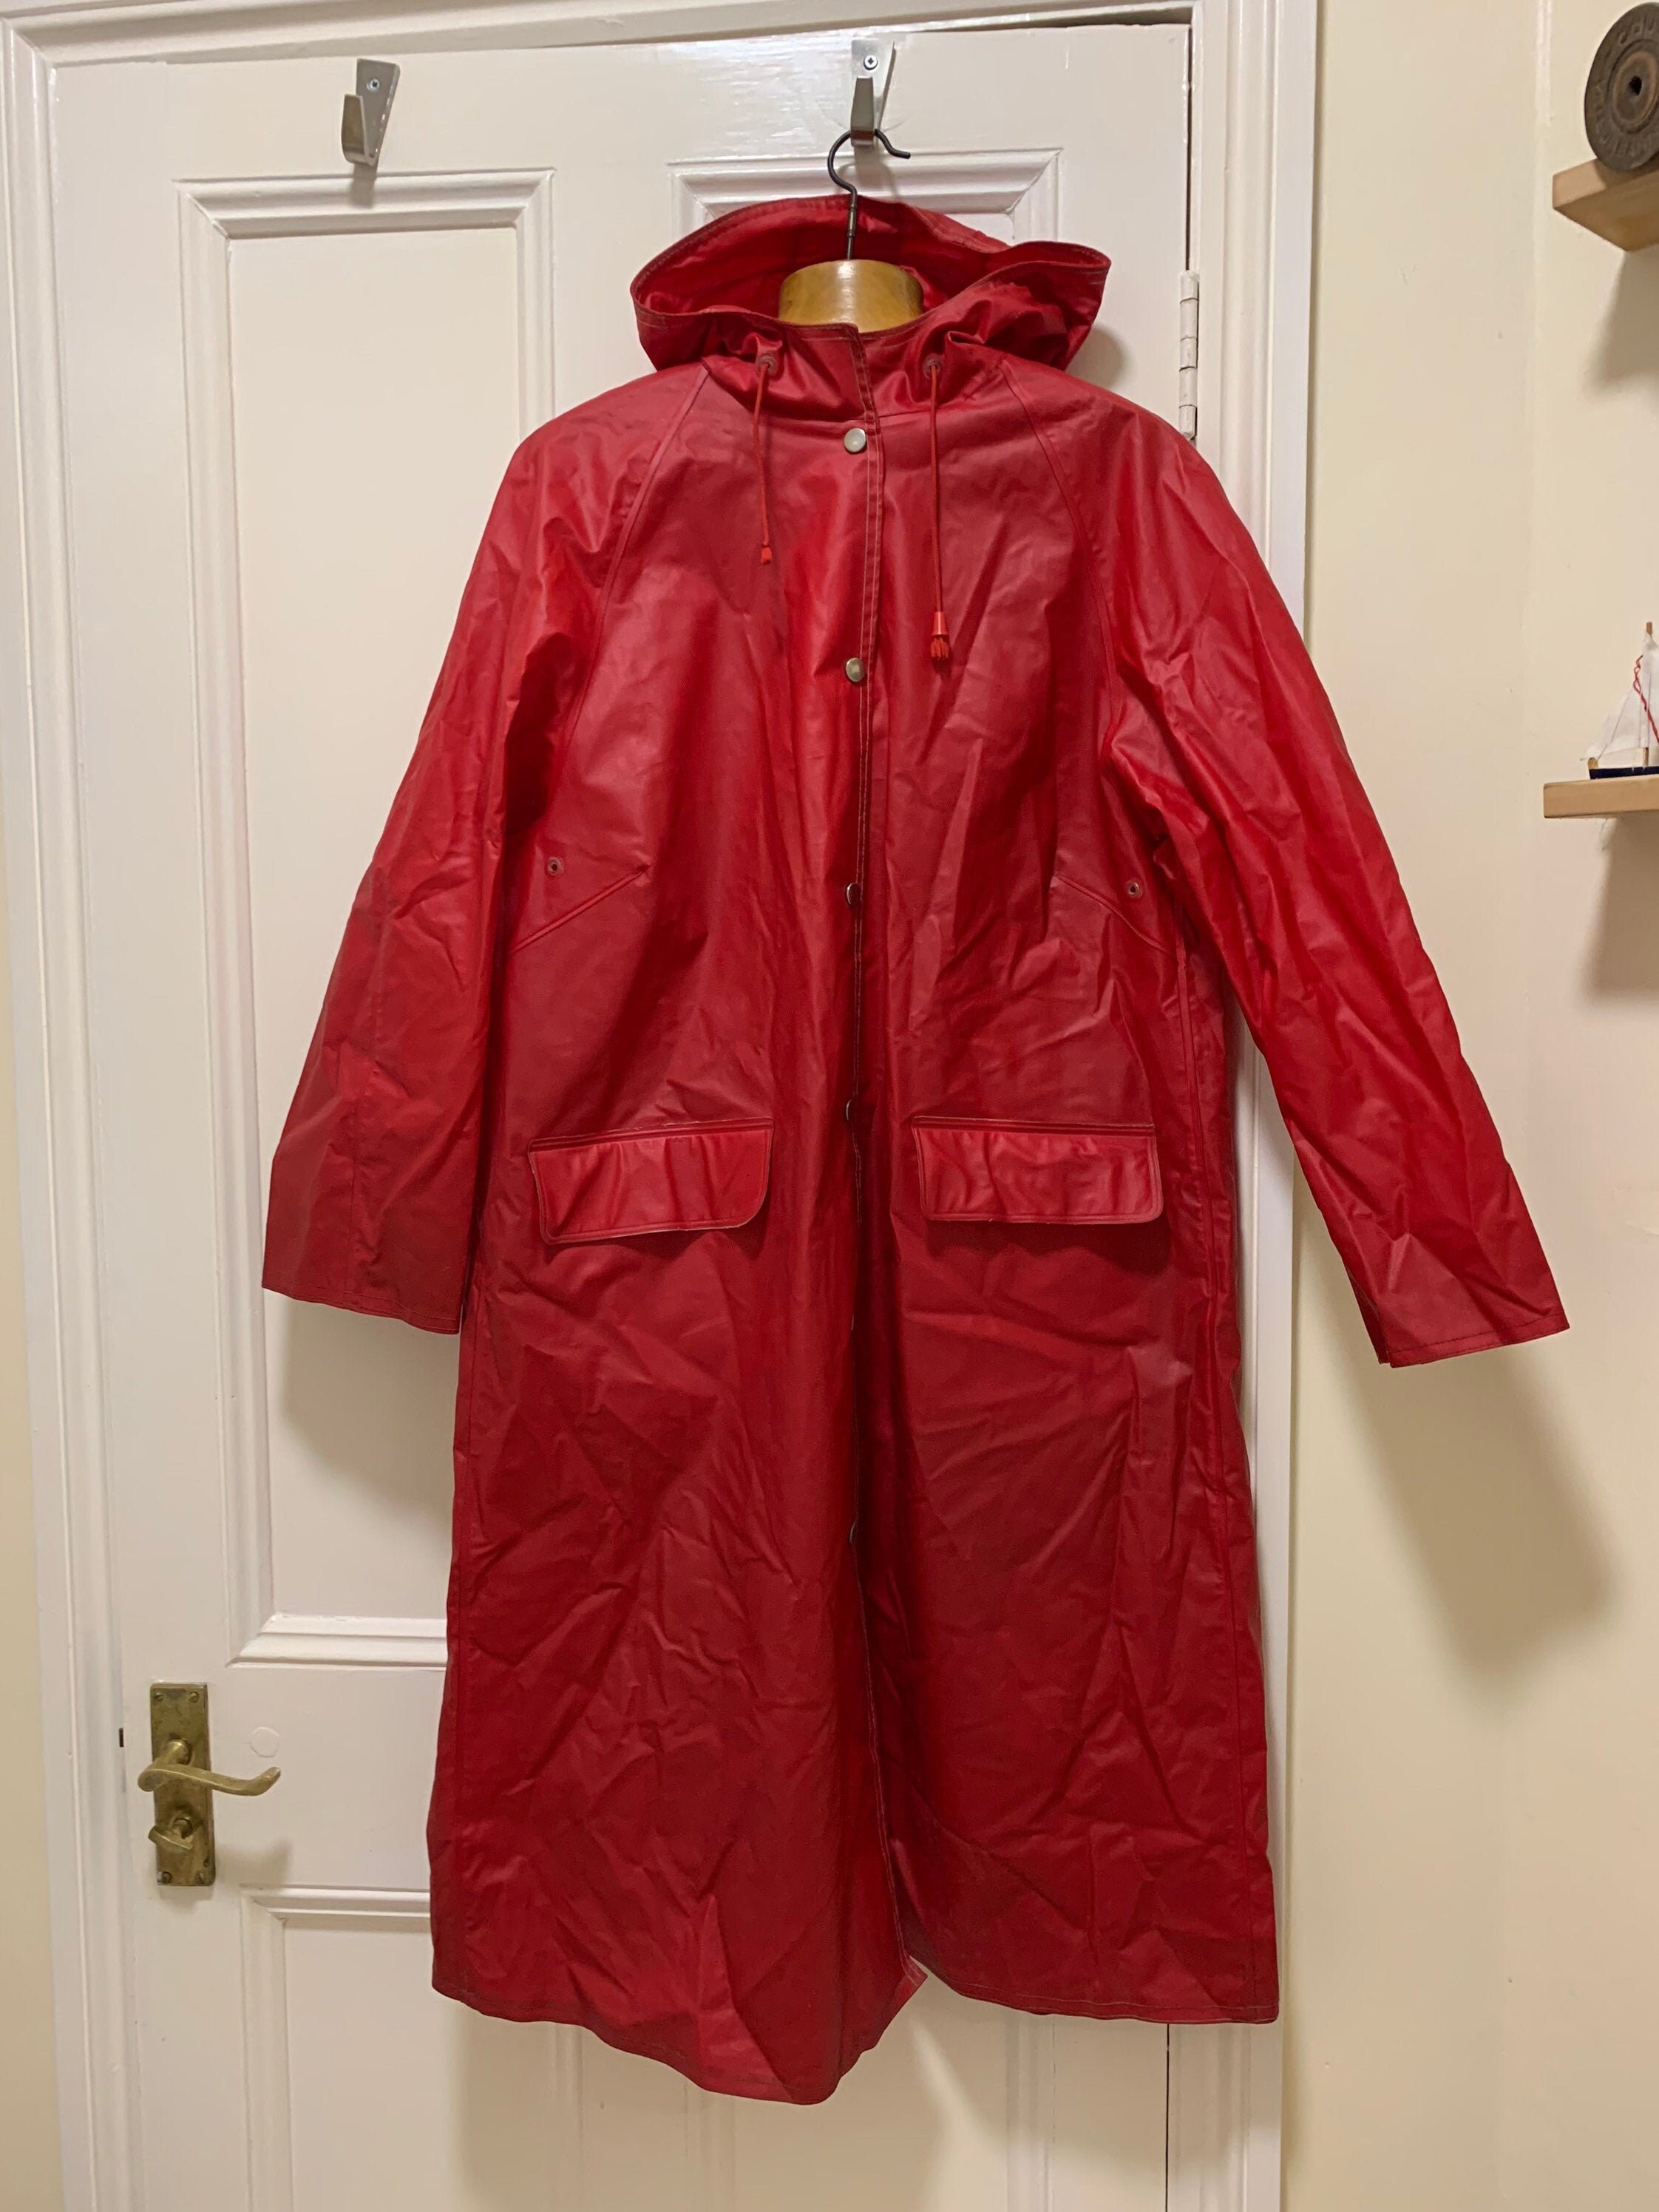 Vintage 70s red Rukka PVC Waterproof Rain Coat Made in | Etsy